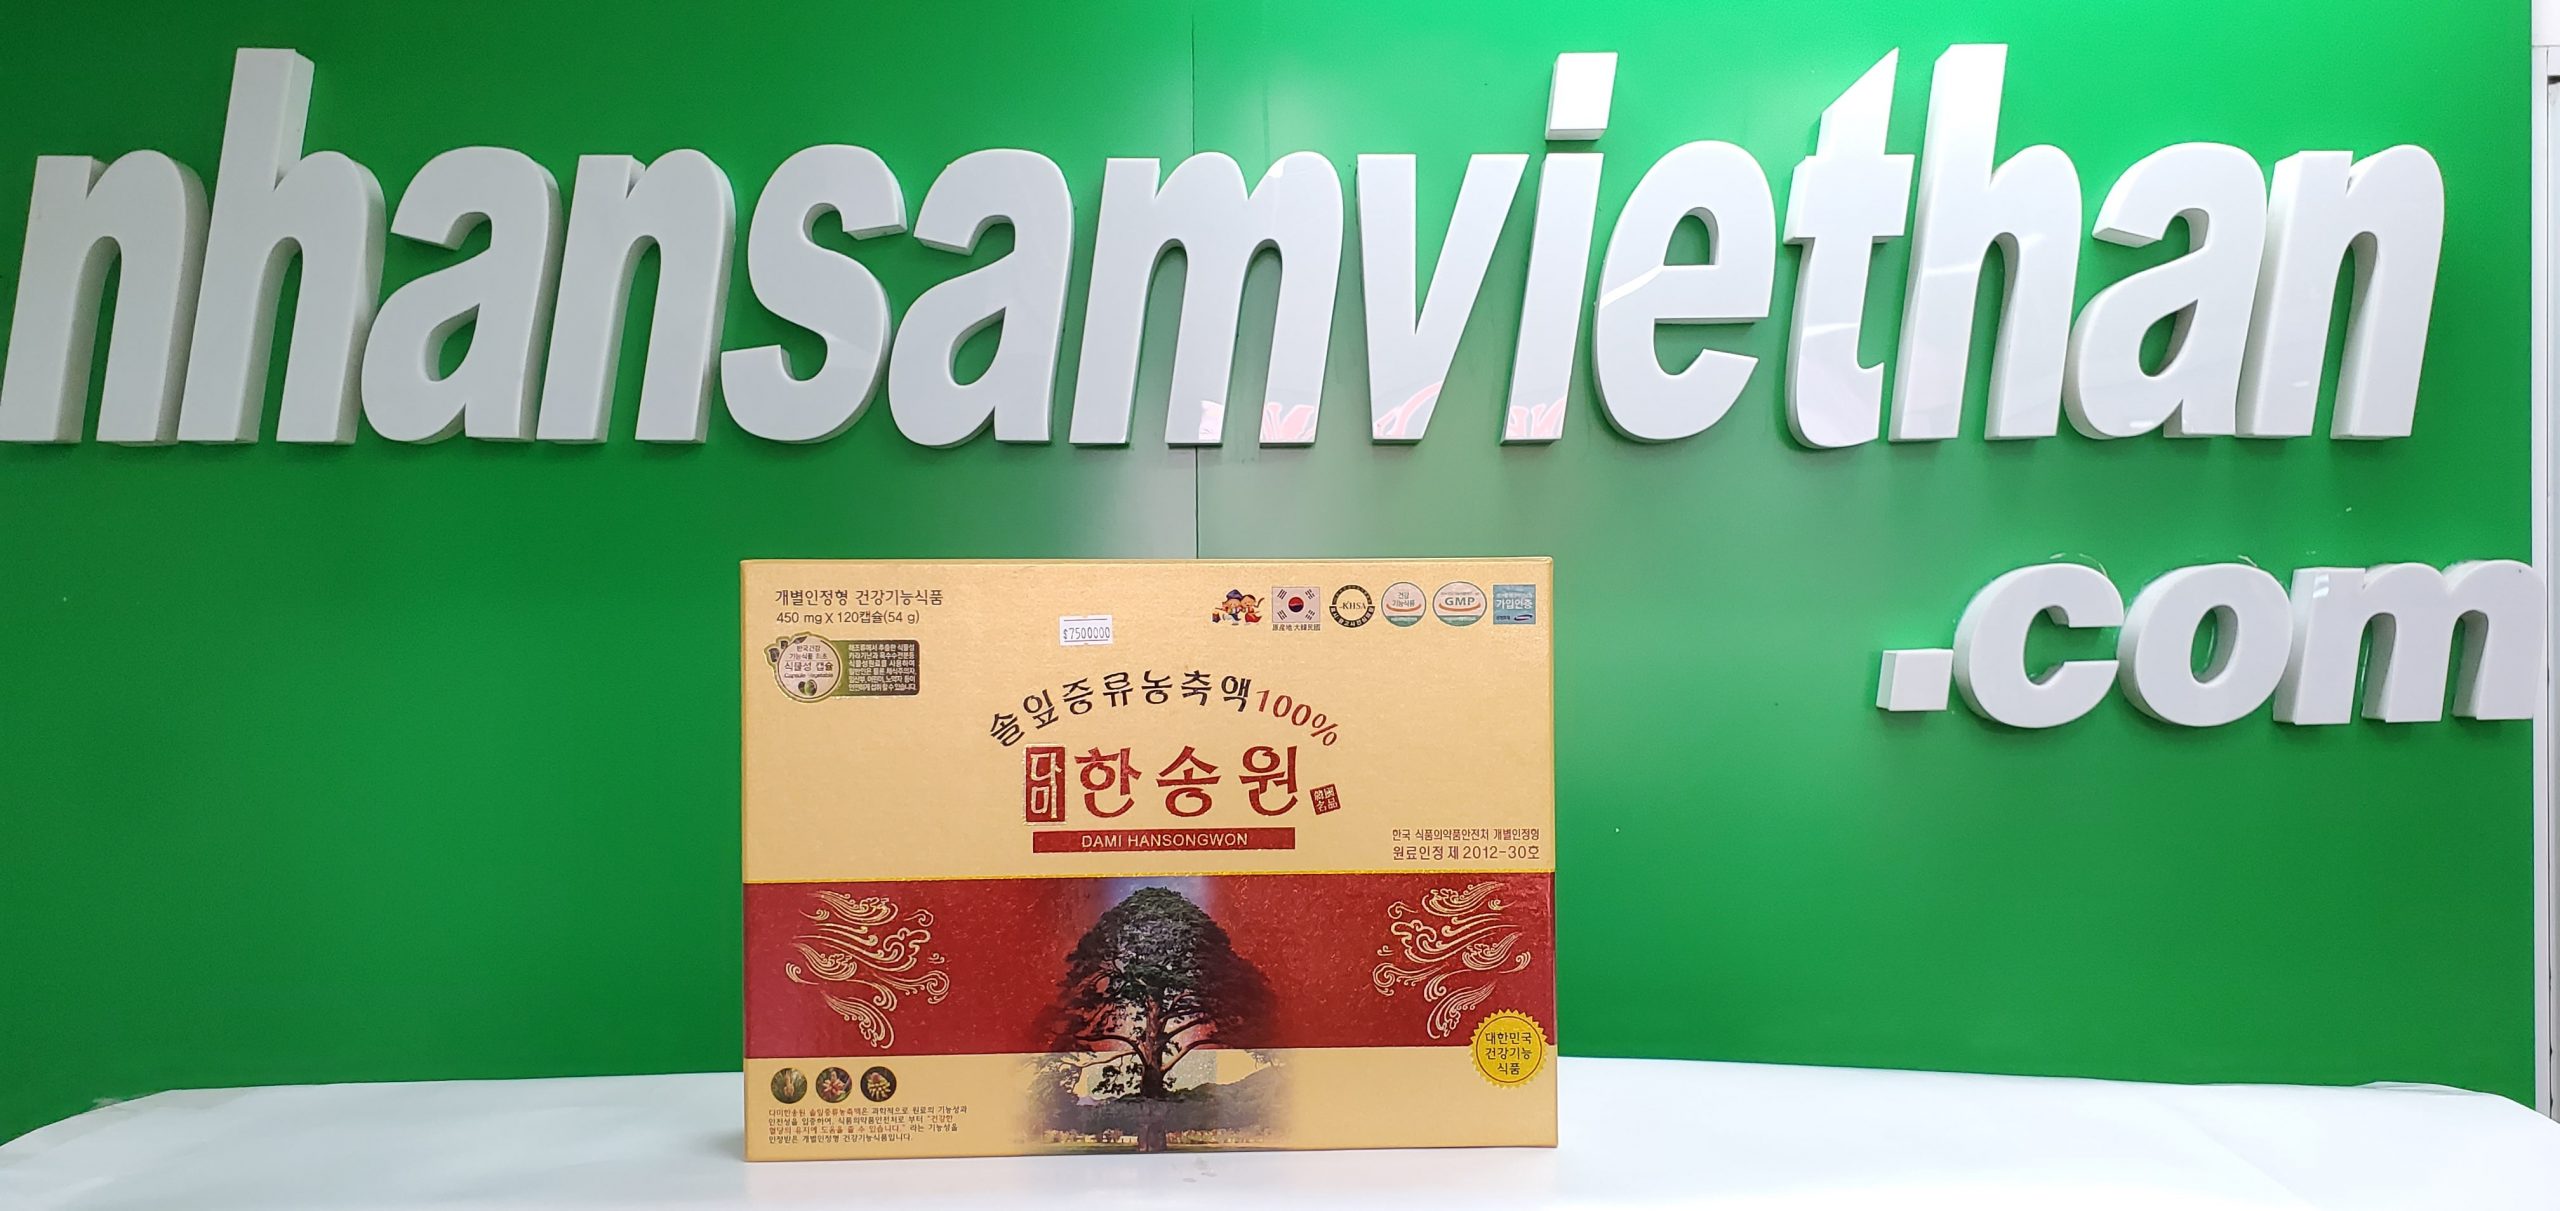 Hình ảnh: Tinh dầu thông đỏ DAMI HANSONGWON tại cửa hàng Nhân Sâm Việt Hàn